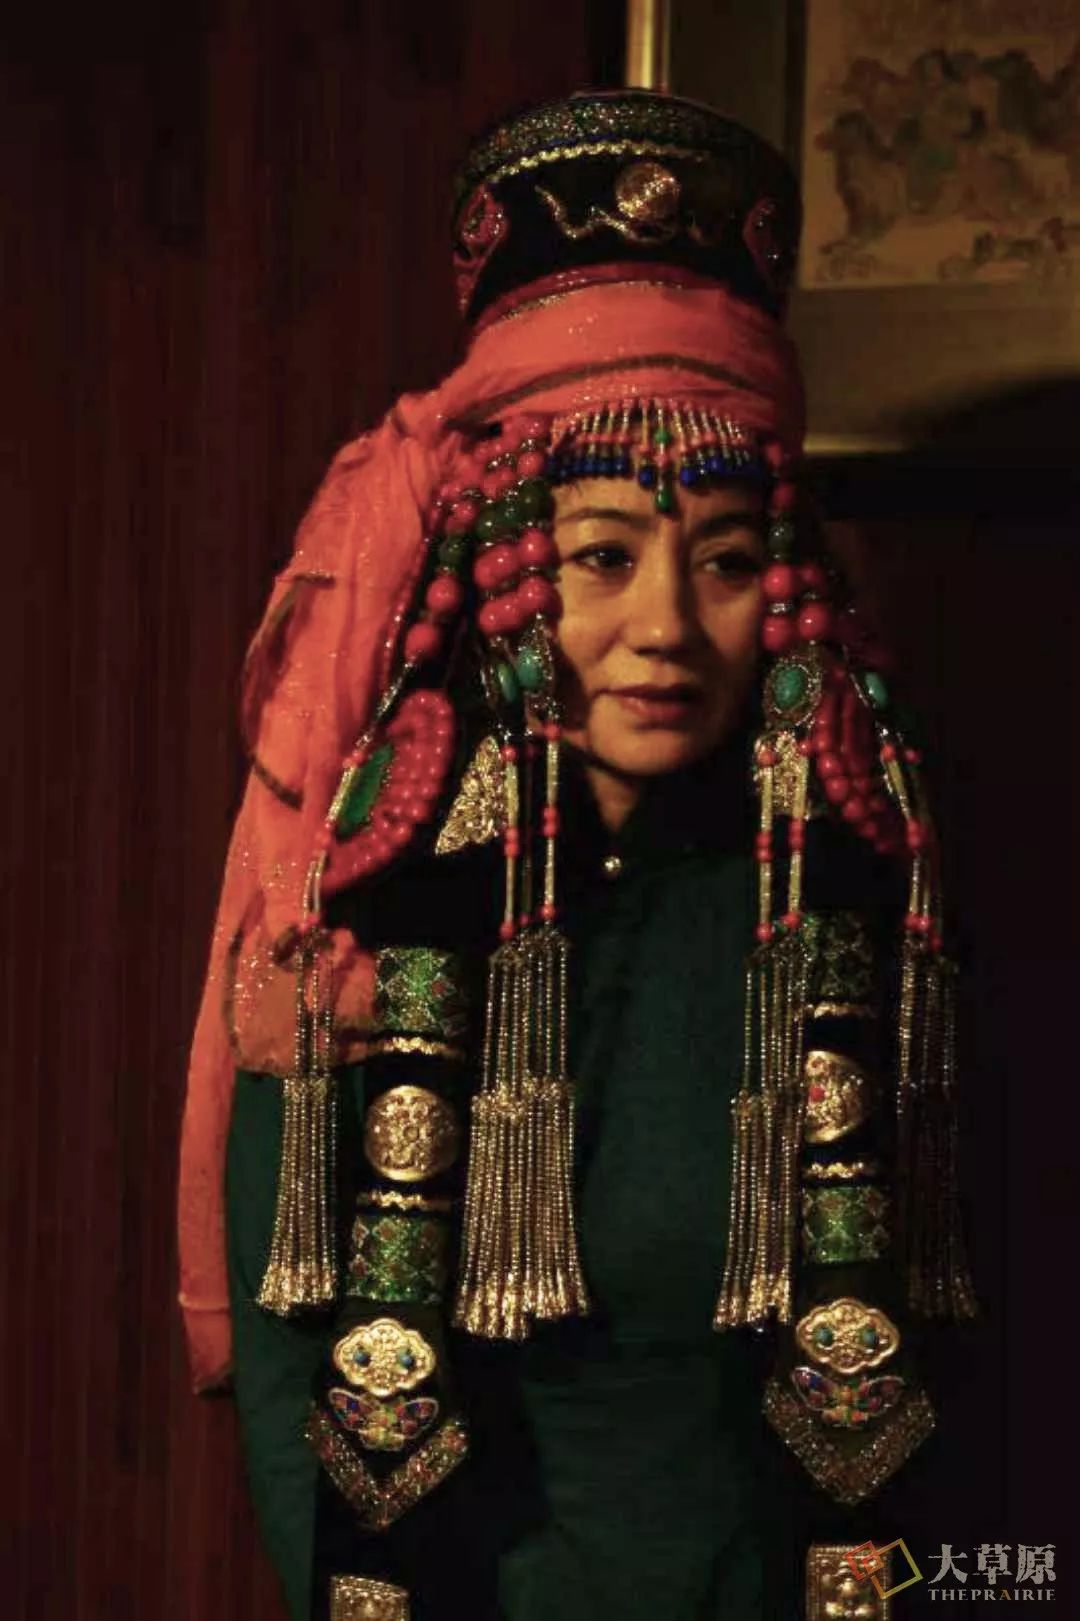 蒙古族 鄂尔多斯美女 - 半炷尘香 - 图虫网 - 最好的摄影师都在这